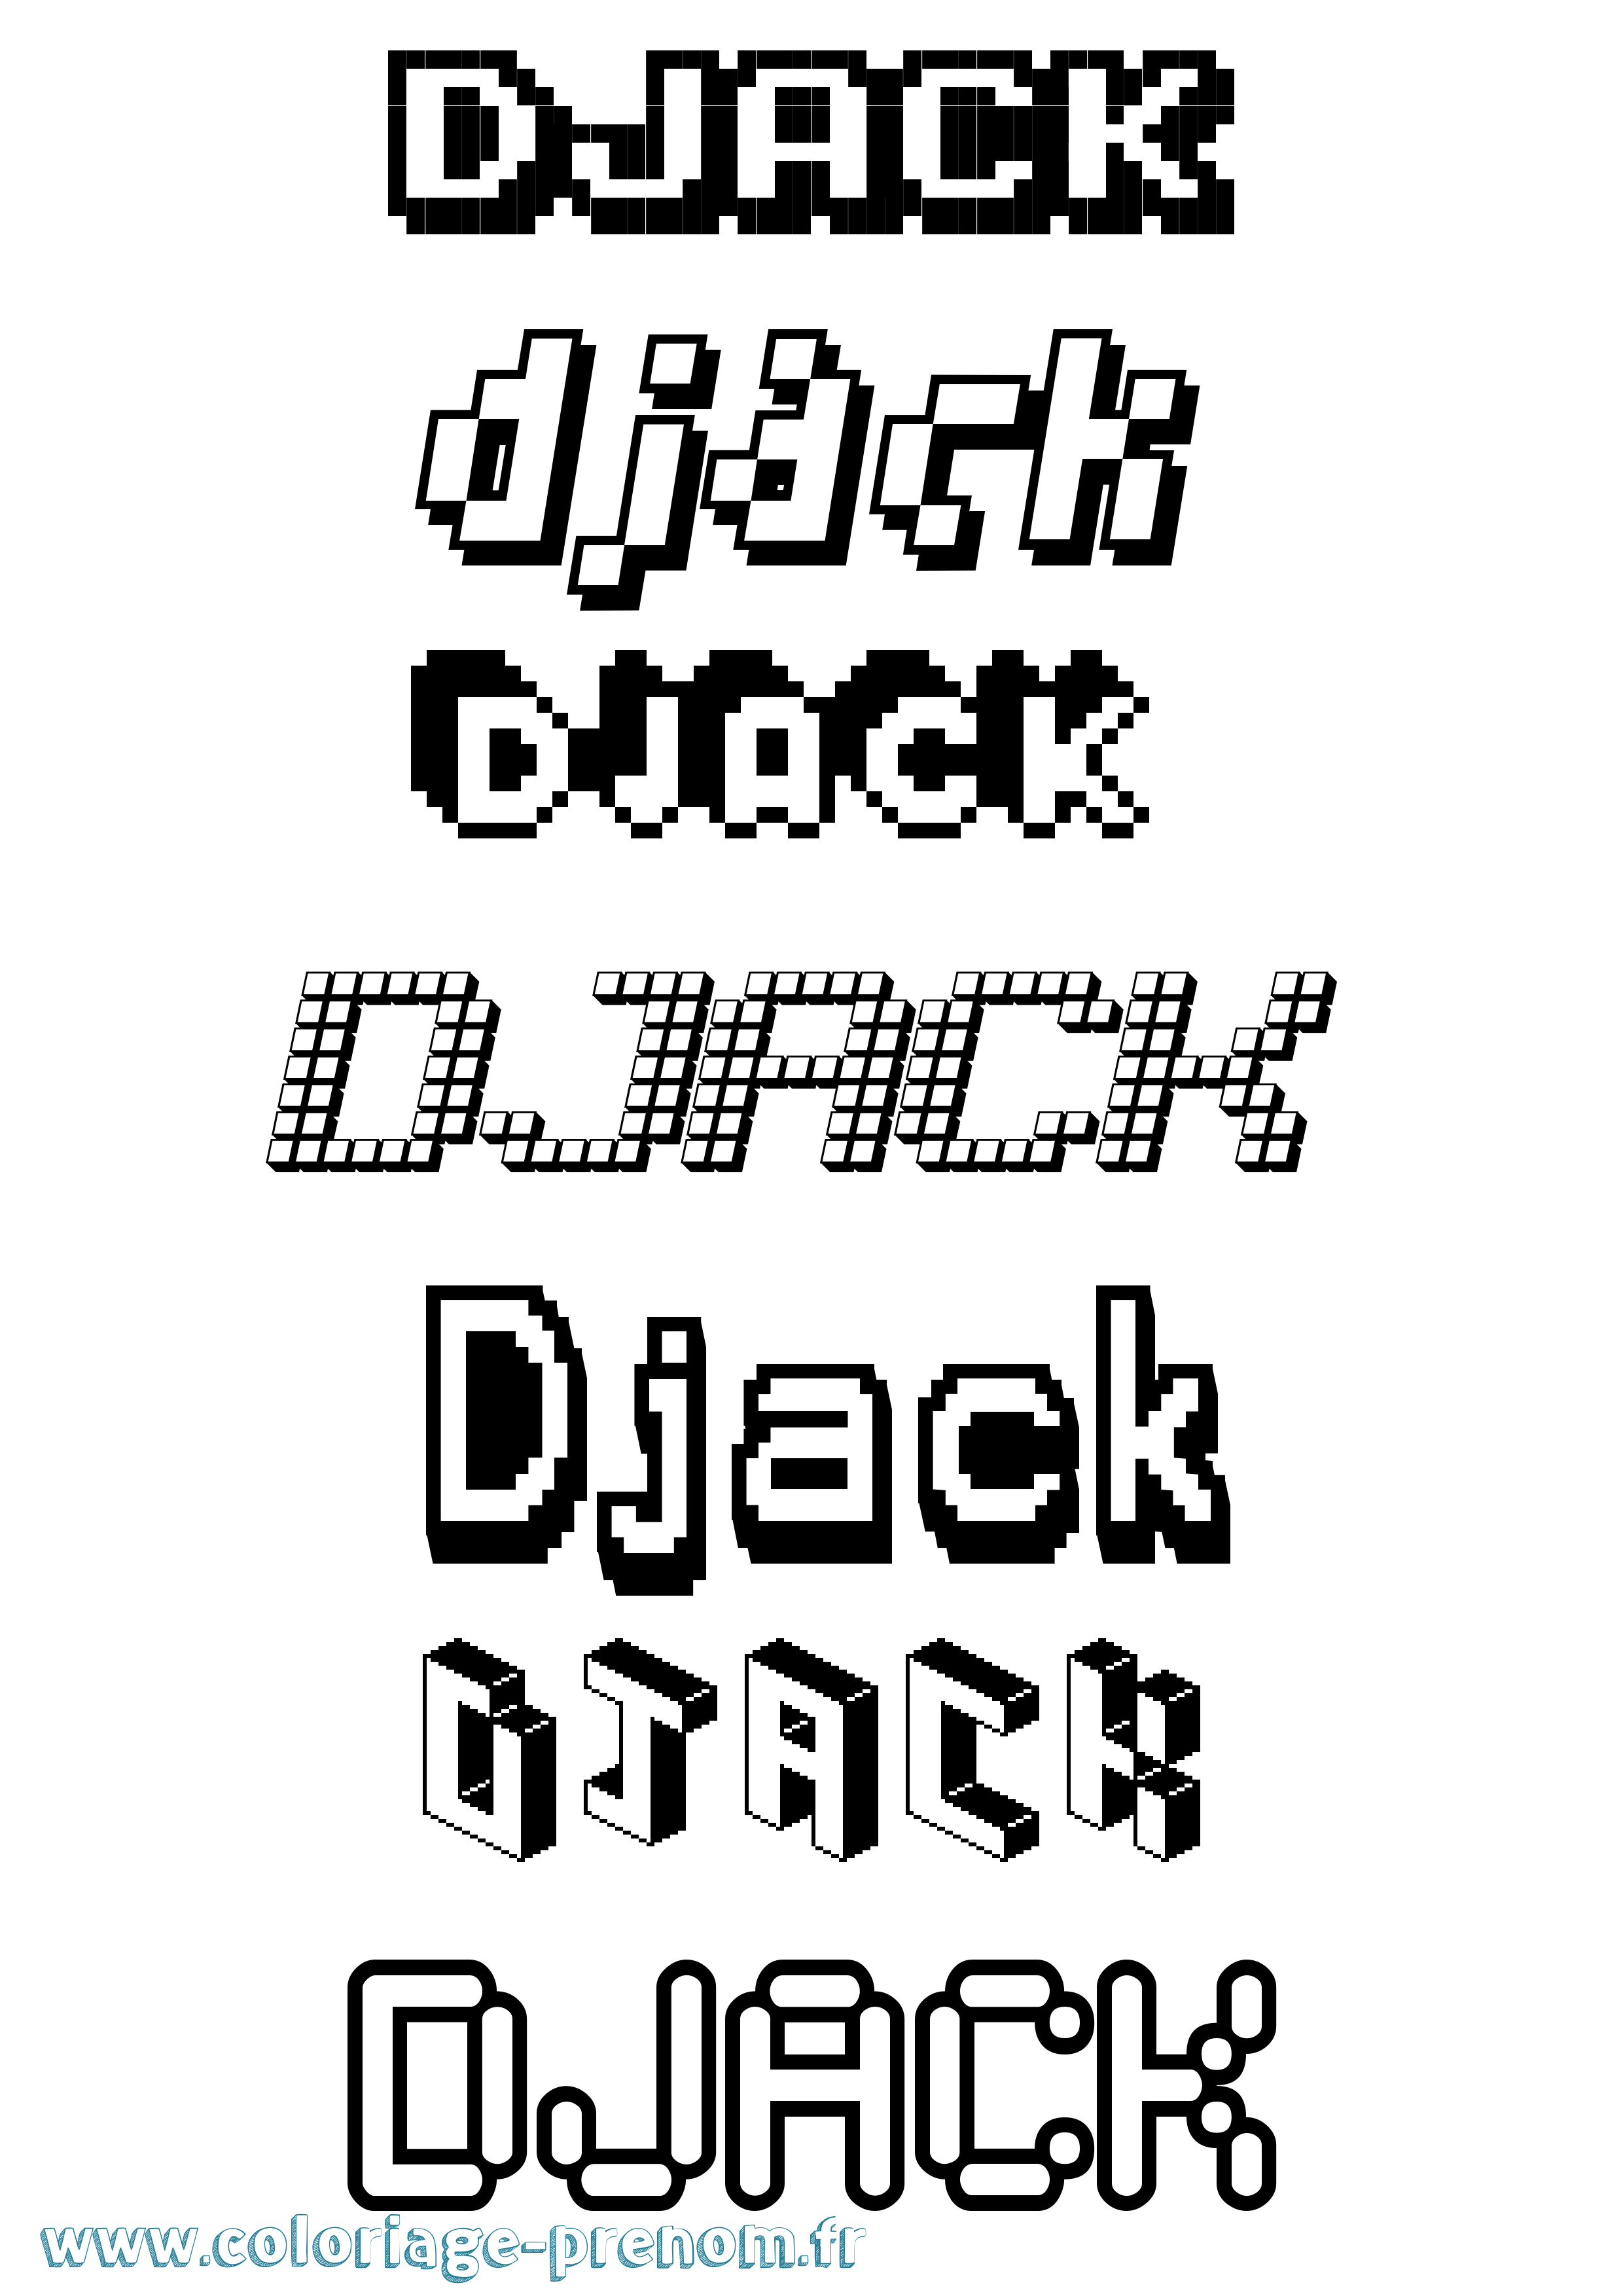 Coloriage prénom Djack Pixel